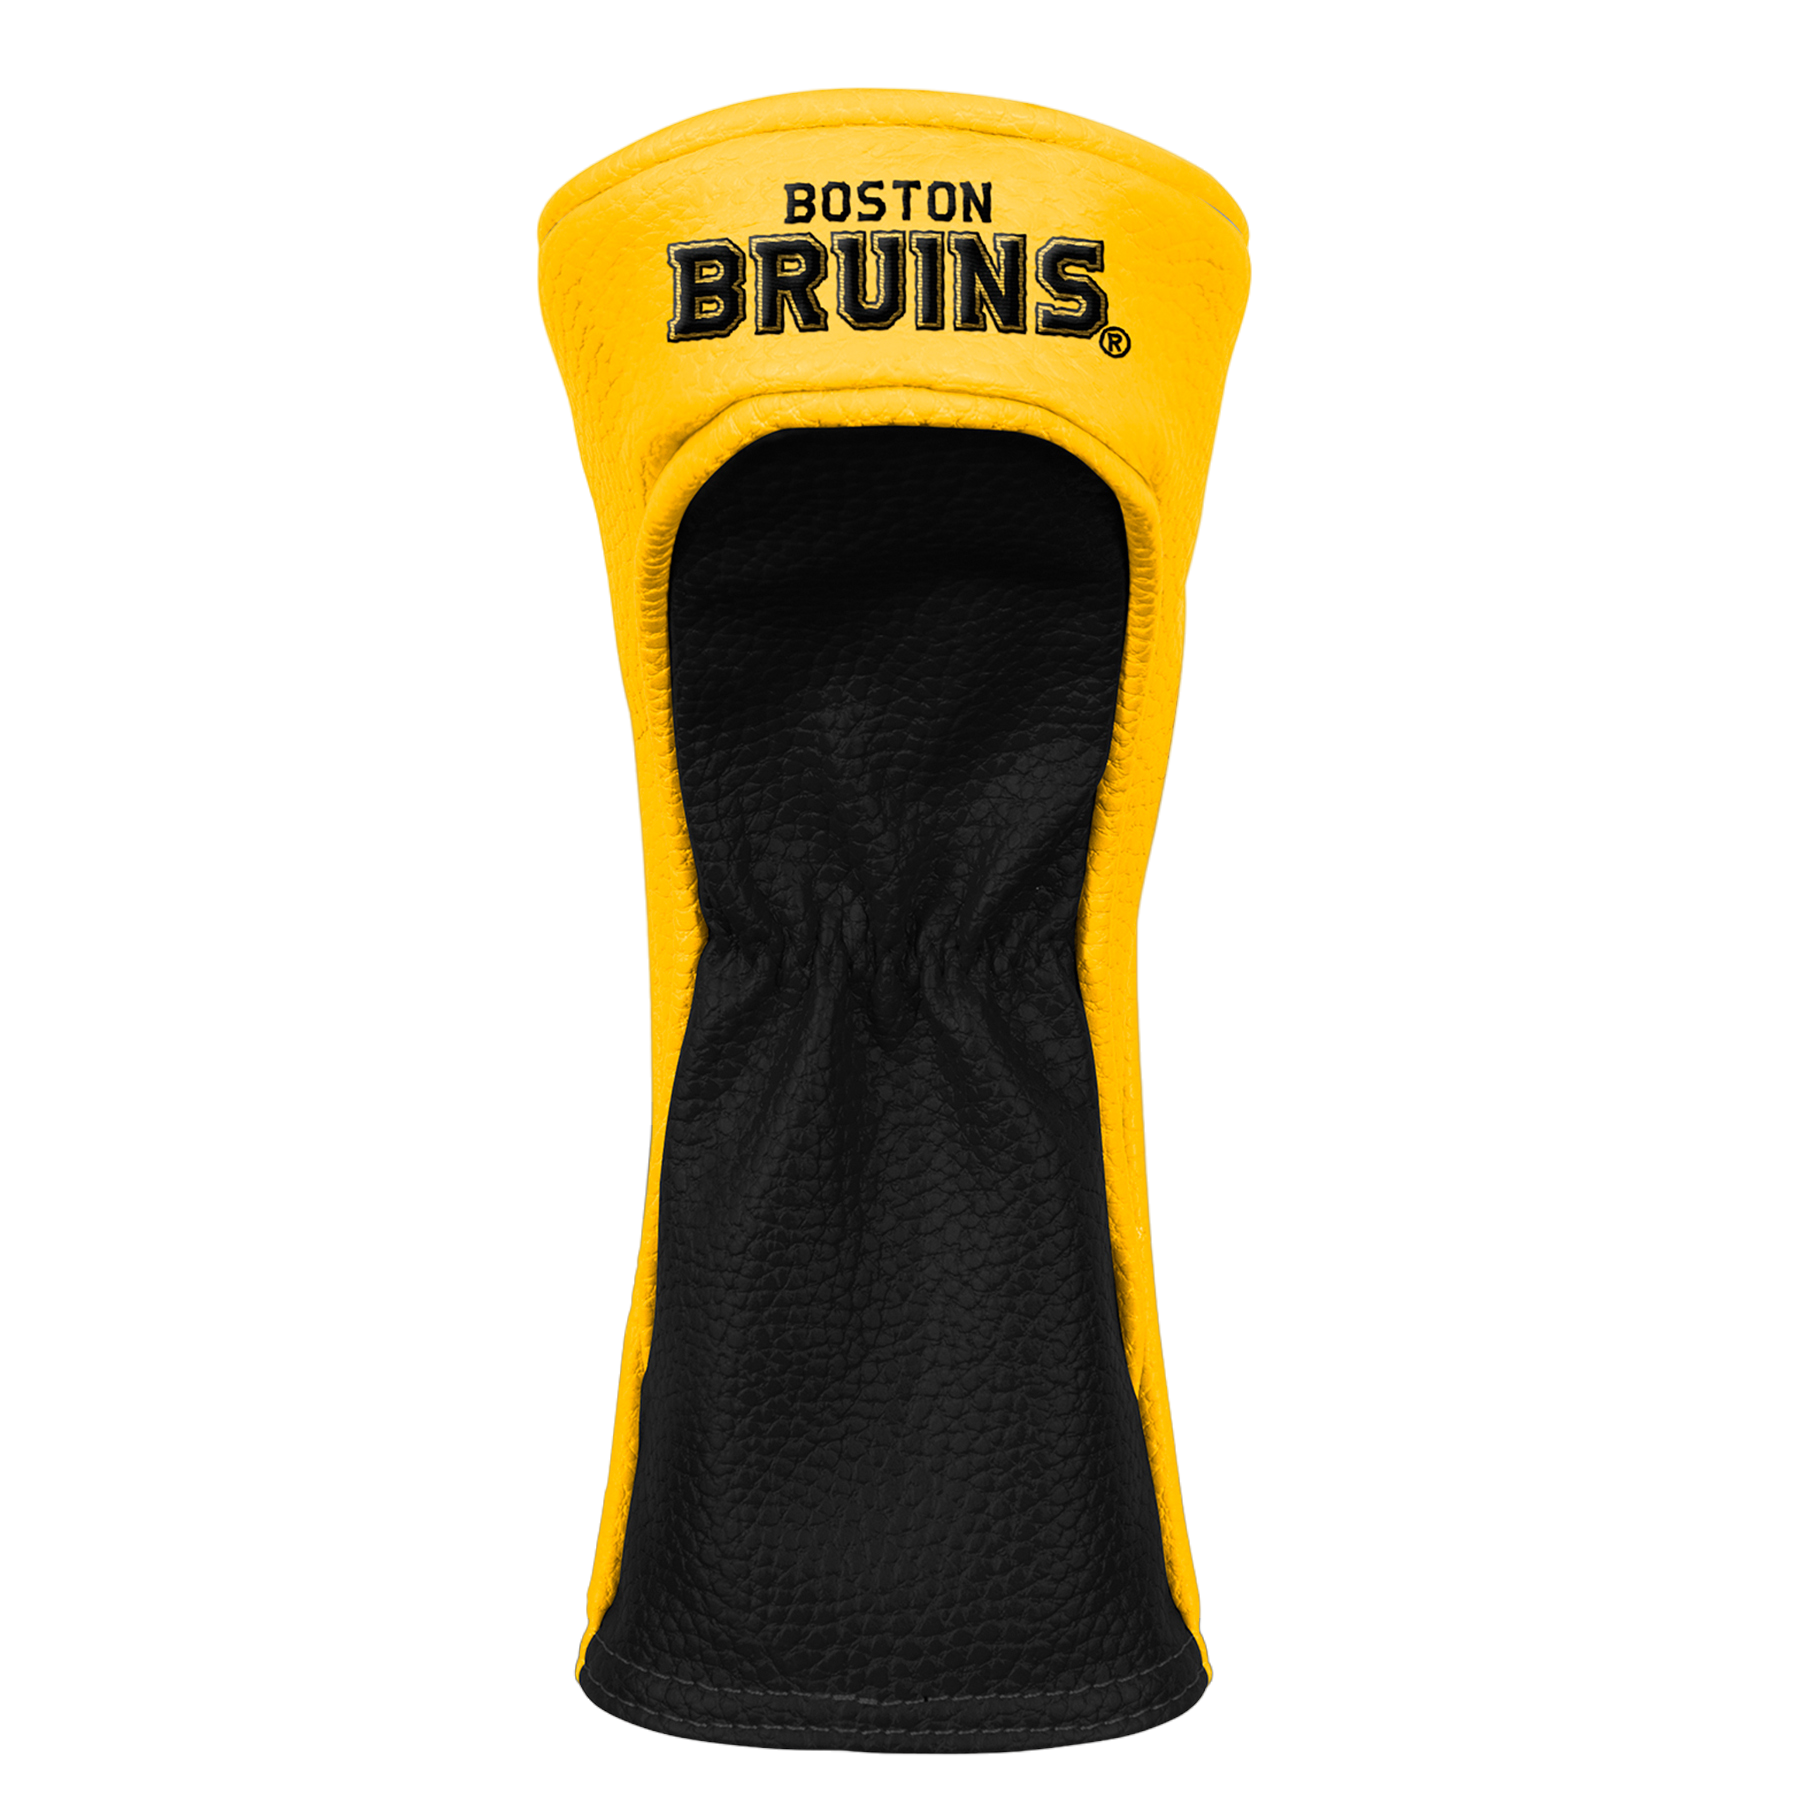 Boston Bruins Hybrid Headcover